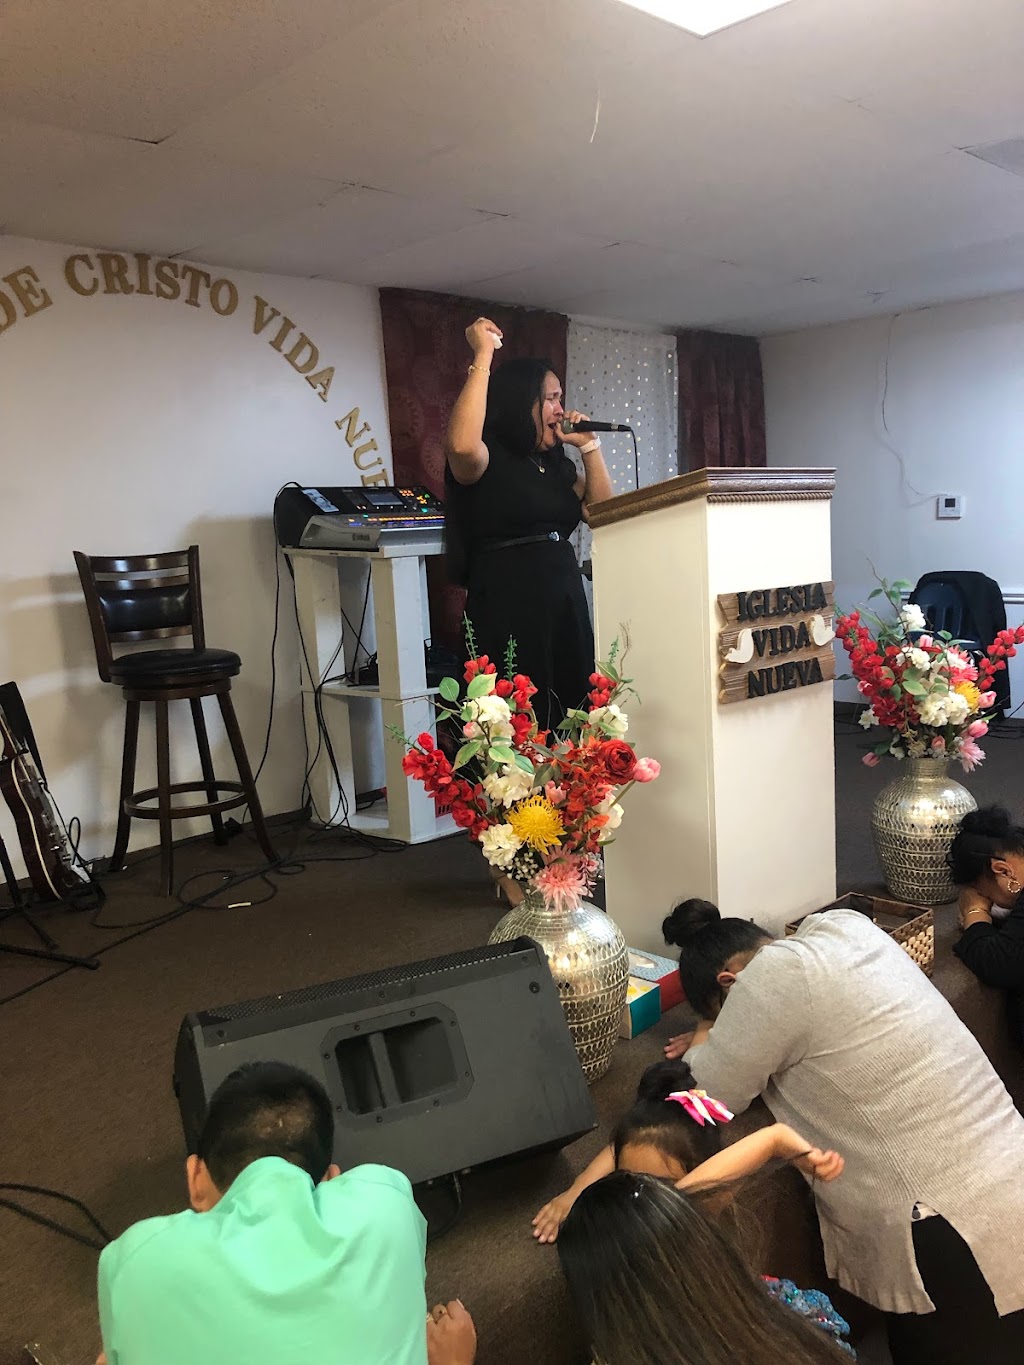 Iglesia De Cristo Vida Nueva | 419 W Parker Rd, Houston, TX 77091 | Phone: (832) 407-9705